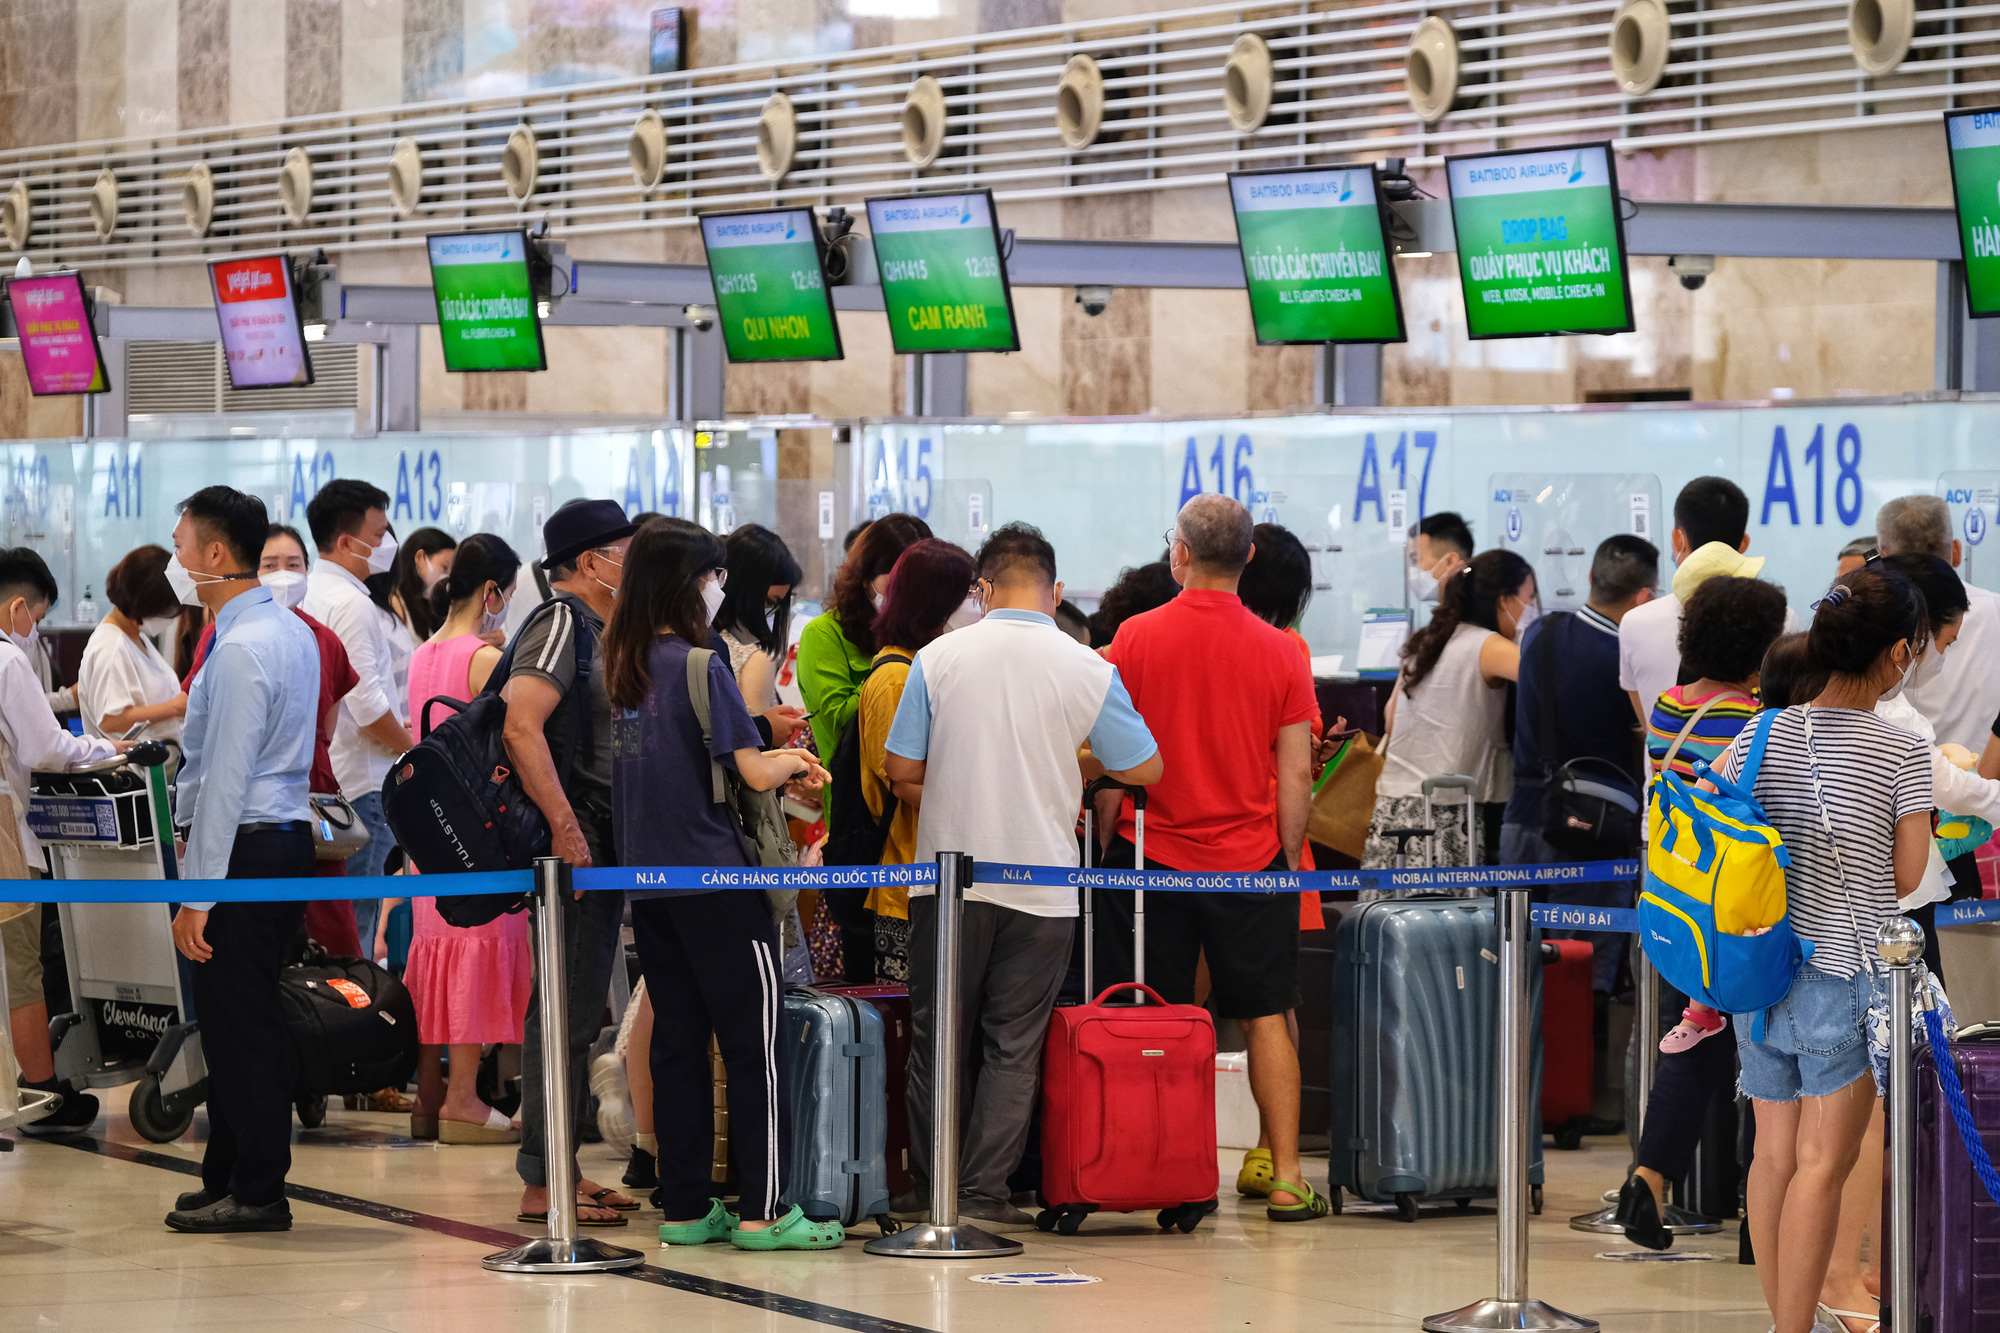 Sân bay Nội Bài đông đúc trước ngày nghỉ lễ, người người nhà nhà đi lu lịch sau tròn 1 năm làn sóng dịch lần thứ 4 - Ảnh 5.